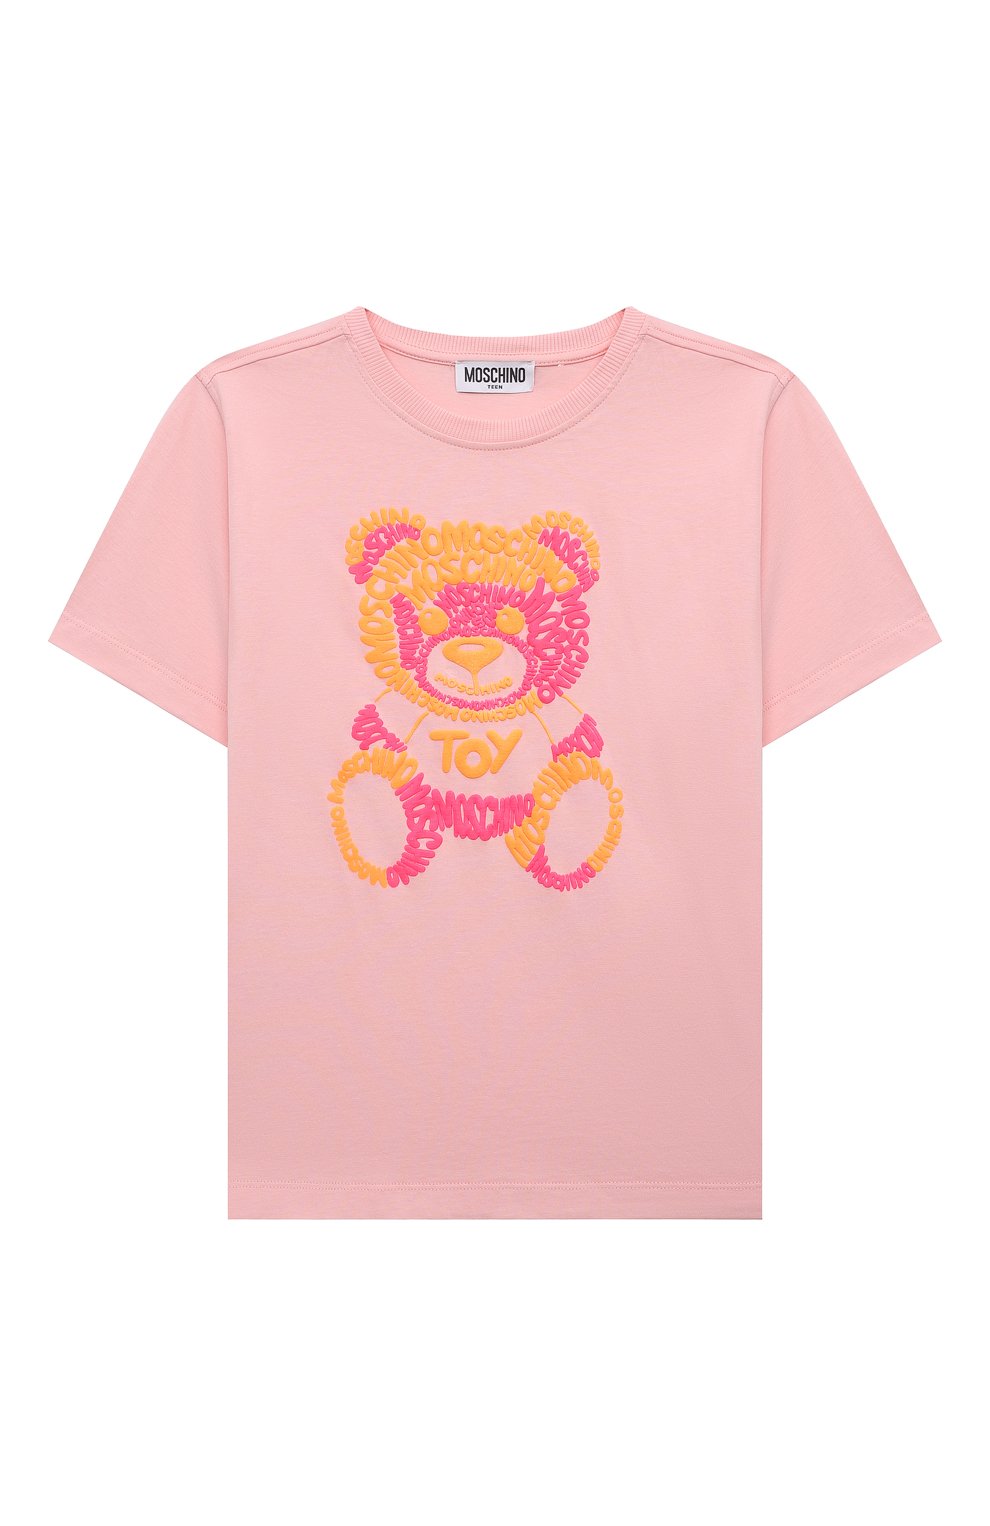 Хлопковая футболка Moschino HUM04C/LAA01/10-14